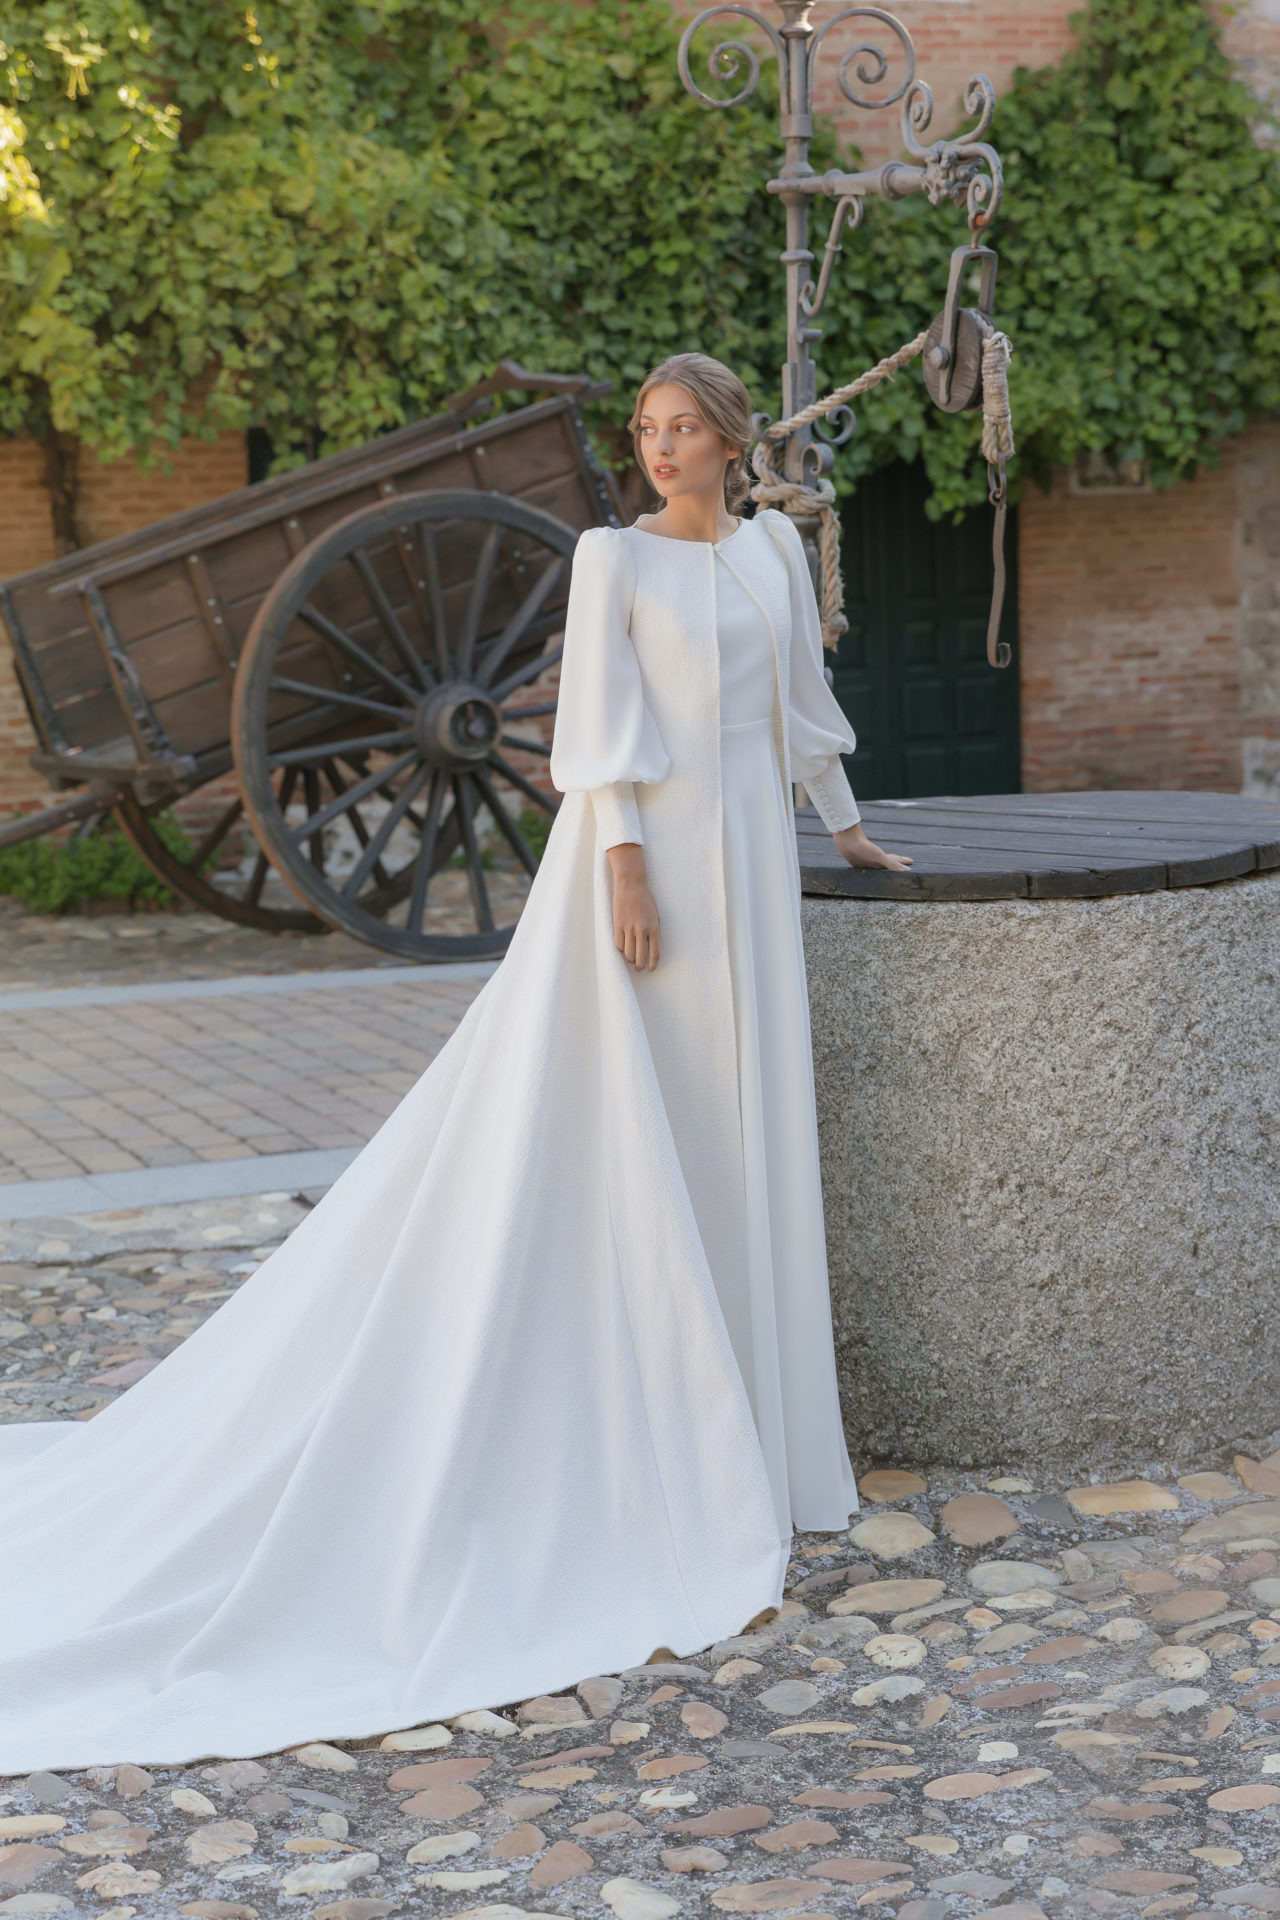 Este sueña con vestidos convertibles María Baraza - Quiero una boda perfecta - Blog de Bodas